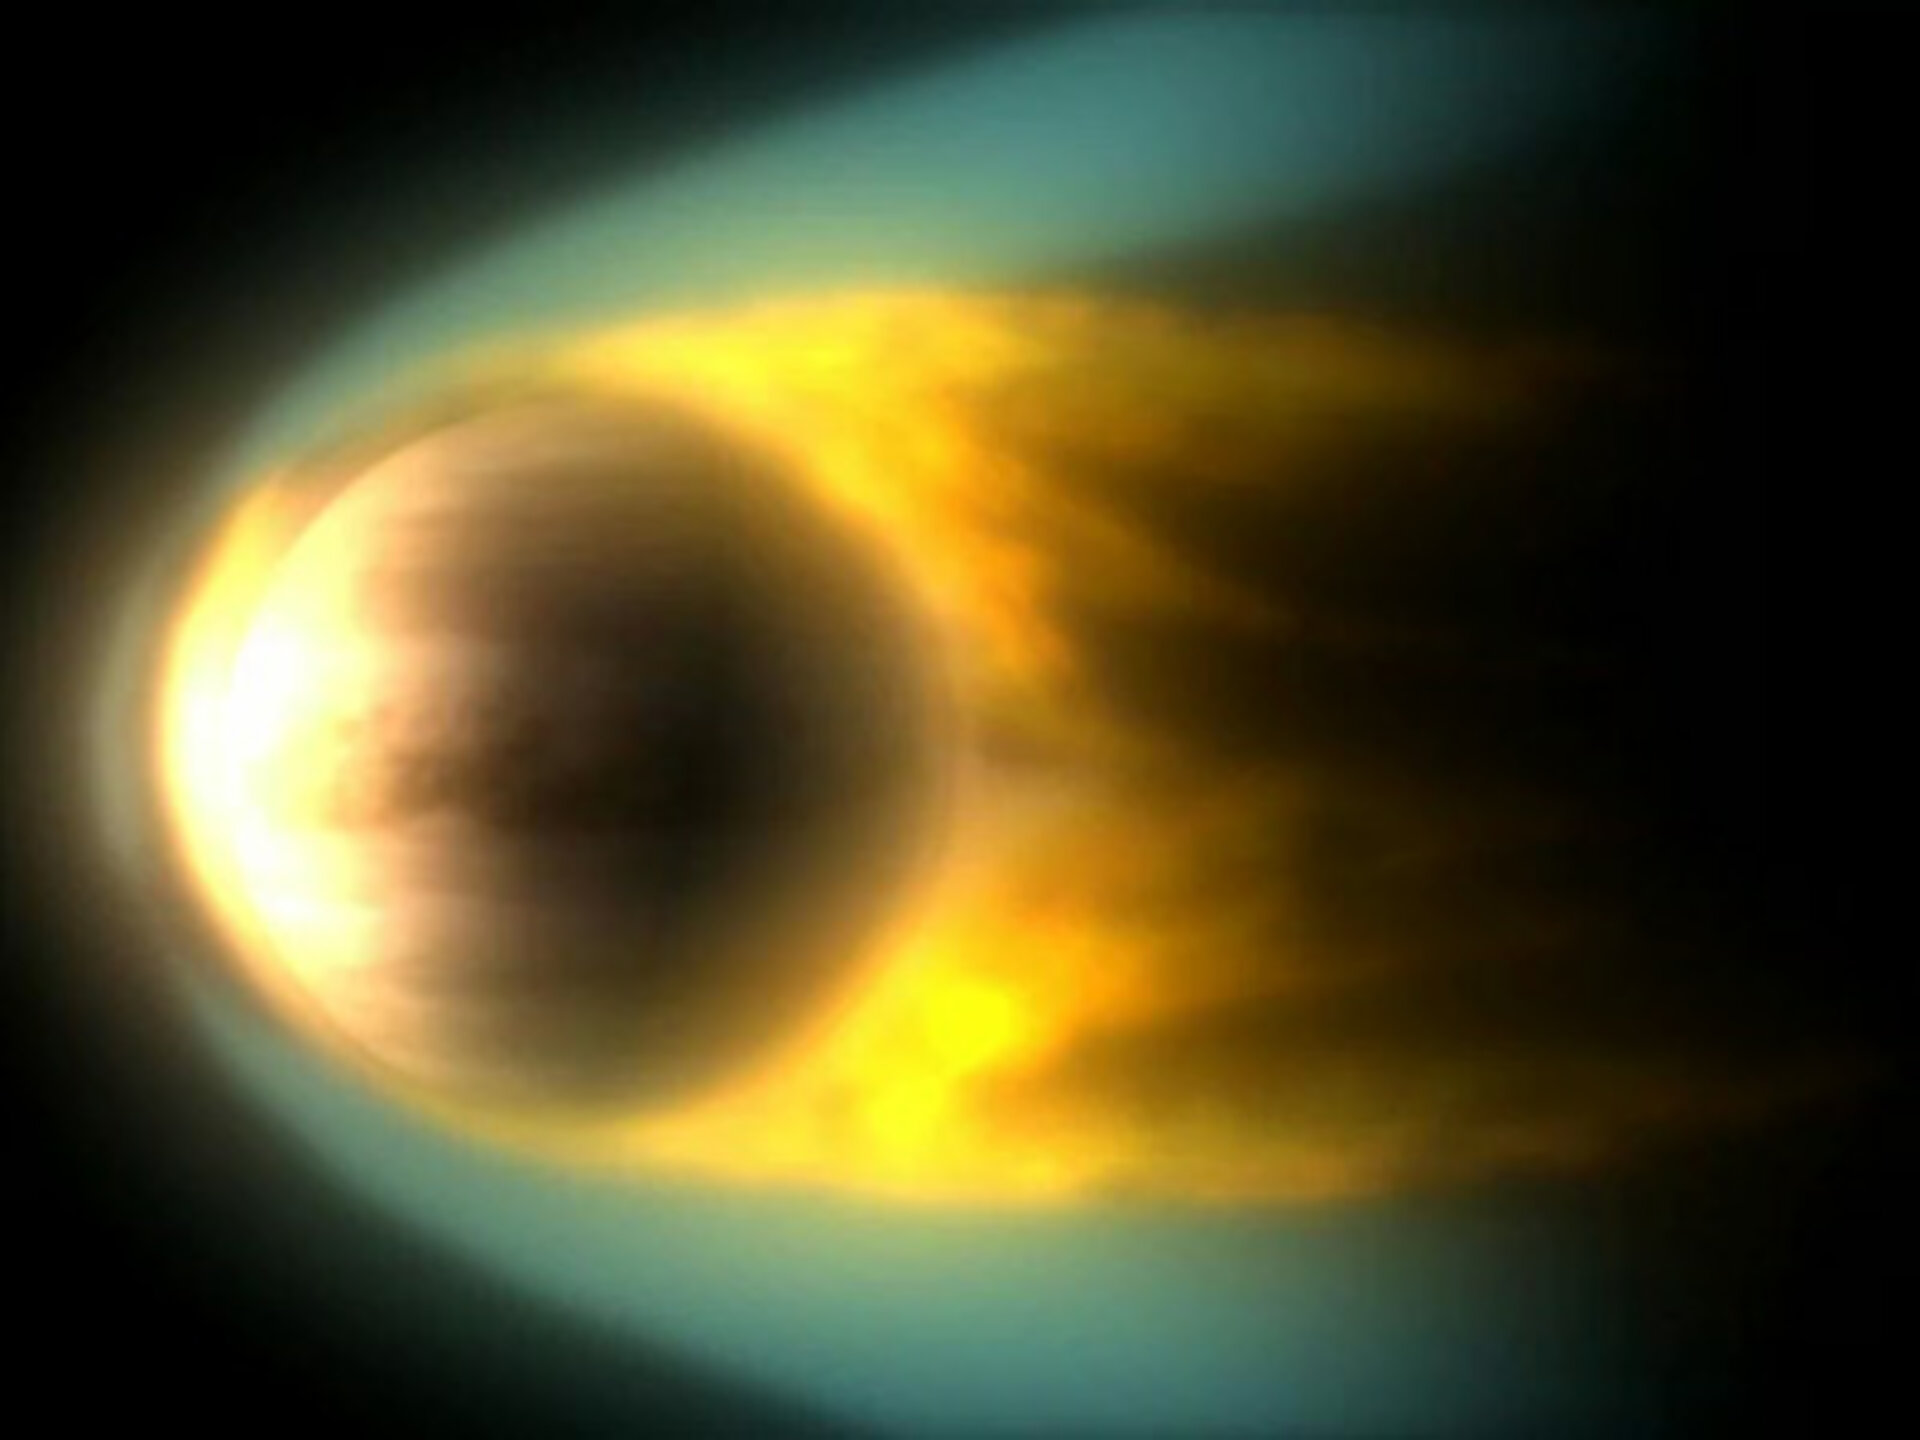 Interacción entre Venus y el viento solar